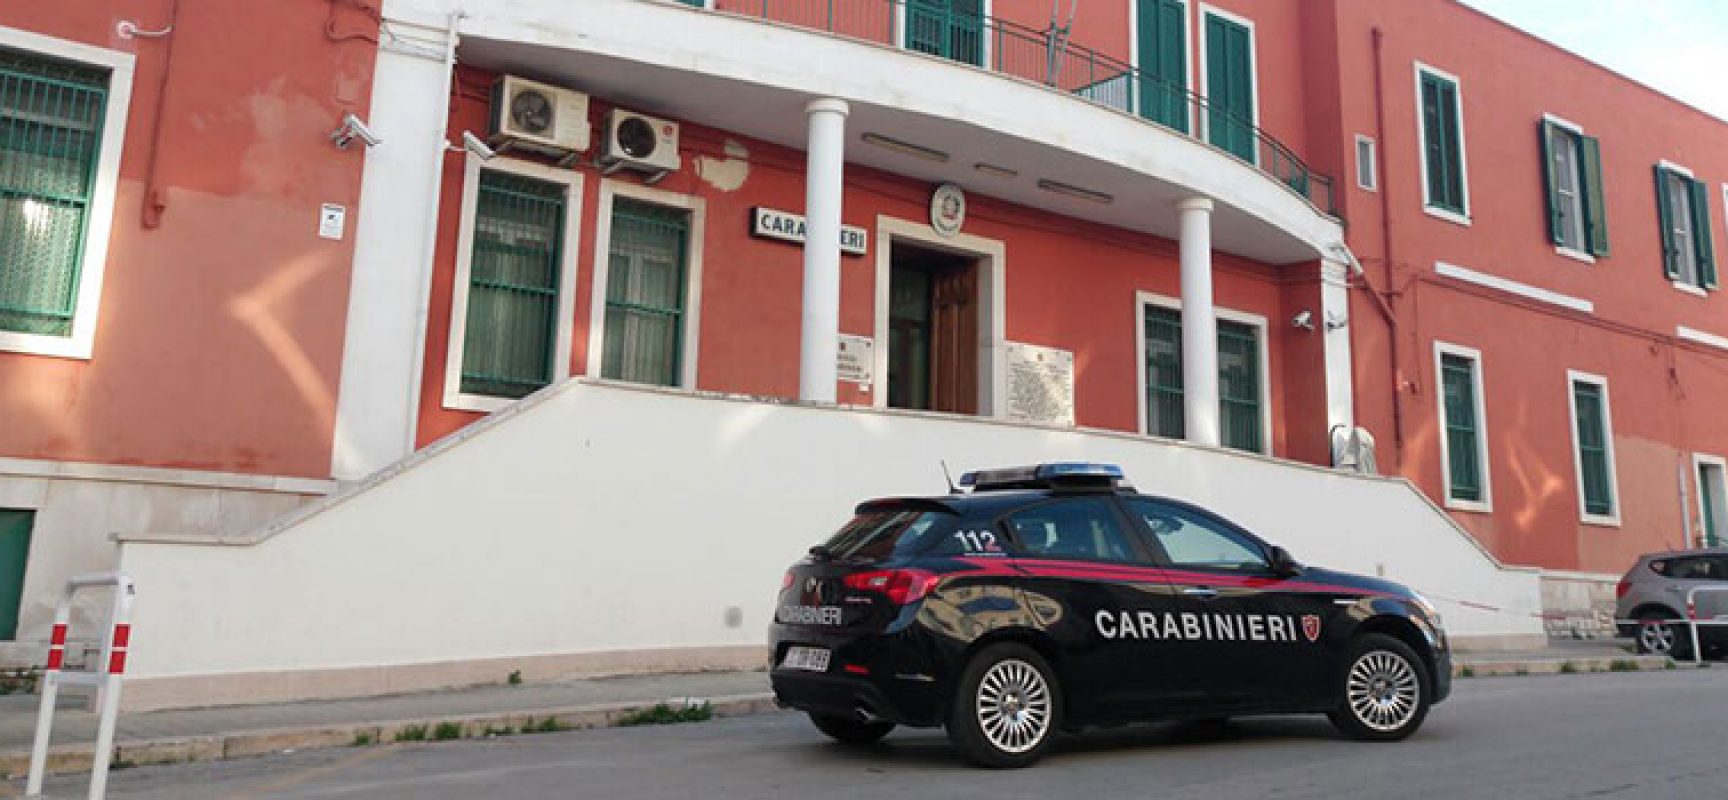 Bisceglie: 28enne agli arresti domiciliari continua a smerciare droga, arrestato dai Carabinieri